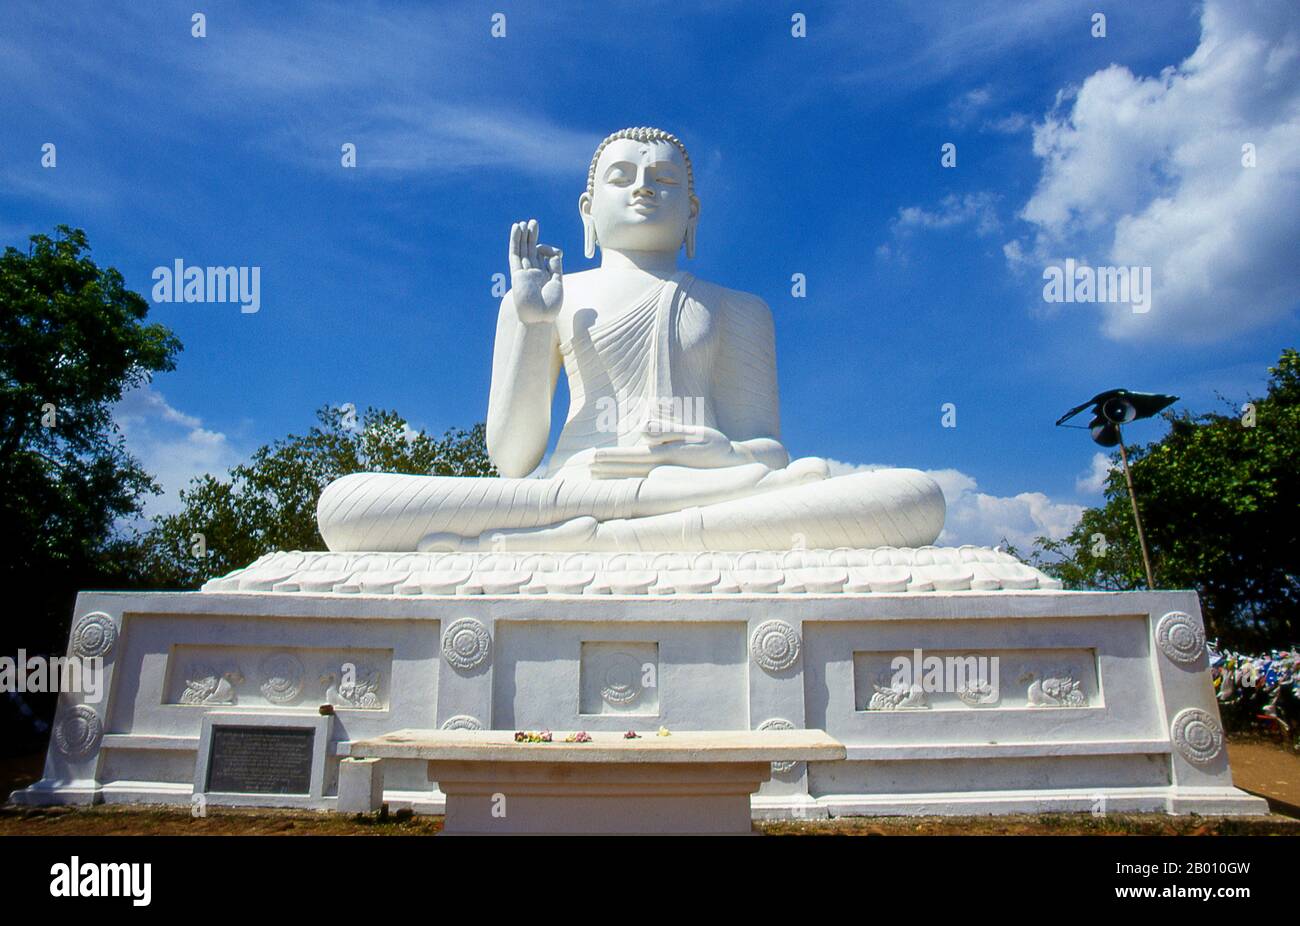 Sri Lanka: Bouddha géant assis à Ambasthala Dagoba, Mihintale. Mihintale est un sommet de montagne près d'Anuradhapura qui est considéré par Sri Lankans comme le site d'une rencontre entre le moine bouddhiste Mahinda et le roi Devanampiyatissa qui a inauguré la présence du bouddhisme au Sri Lanka. C'est maintenant un lieu de pèlerinage, et le site de plusieurs monuments religieux et structures abandonnées. Banque D'Images